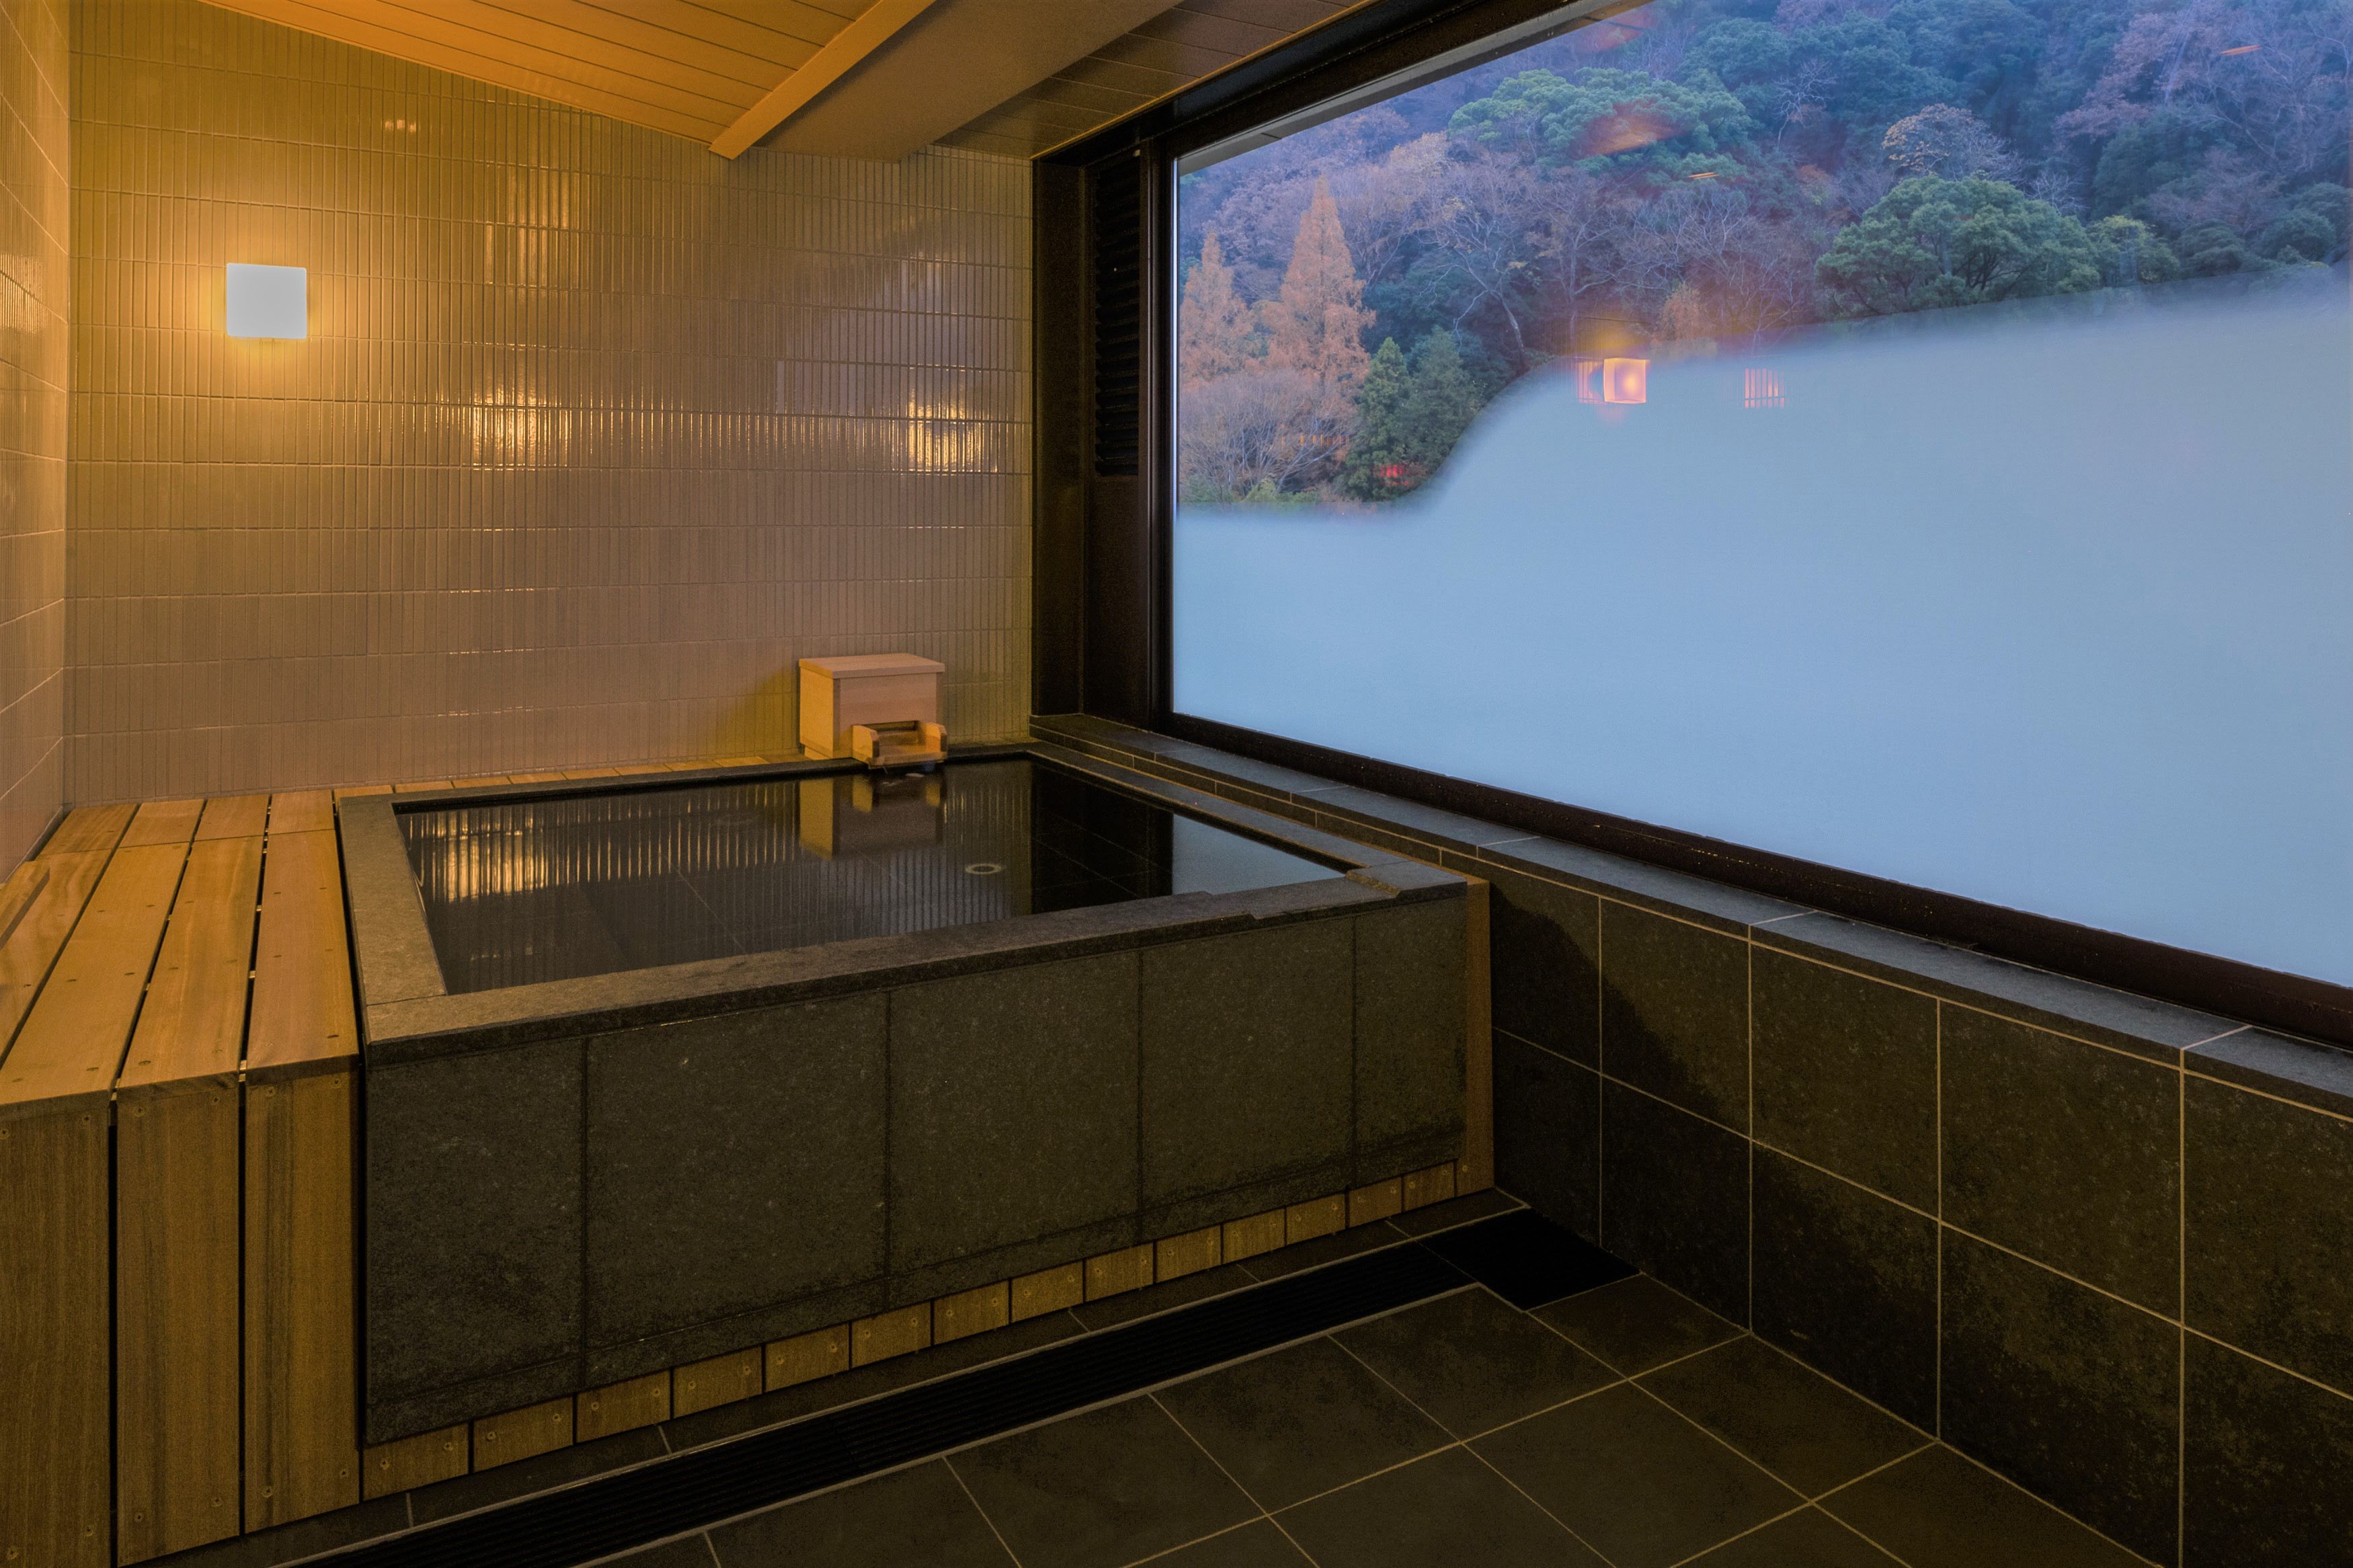 創業3年の老舗旅館 一の湯が運営する箱根路開雲がついに全室フルオープン 株式会社一の湯のプレスリリース